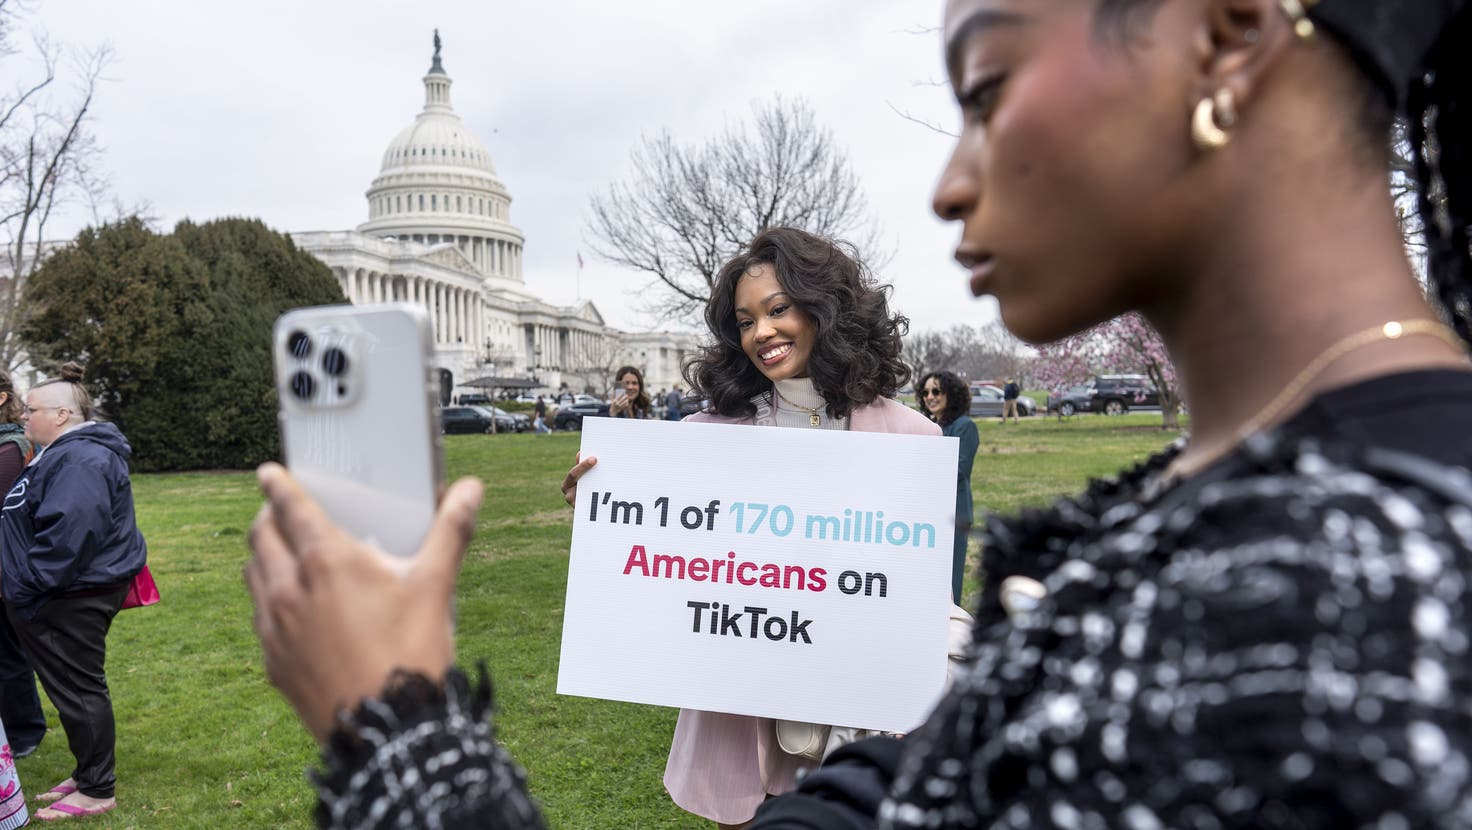 Die Proteste waren vergeblich: Der Kongress in Washington hat ein mögliches Tiktok-Verbot genehmigt, obwohl Nutzer heftig dagegen demonstrierten. (Bild: J. Scott Applewhite/AP)